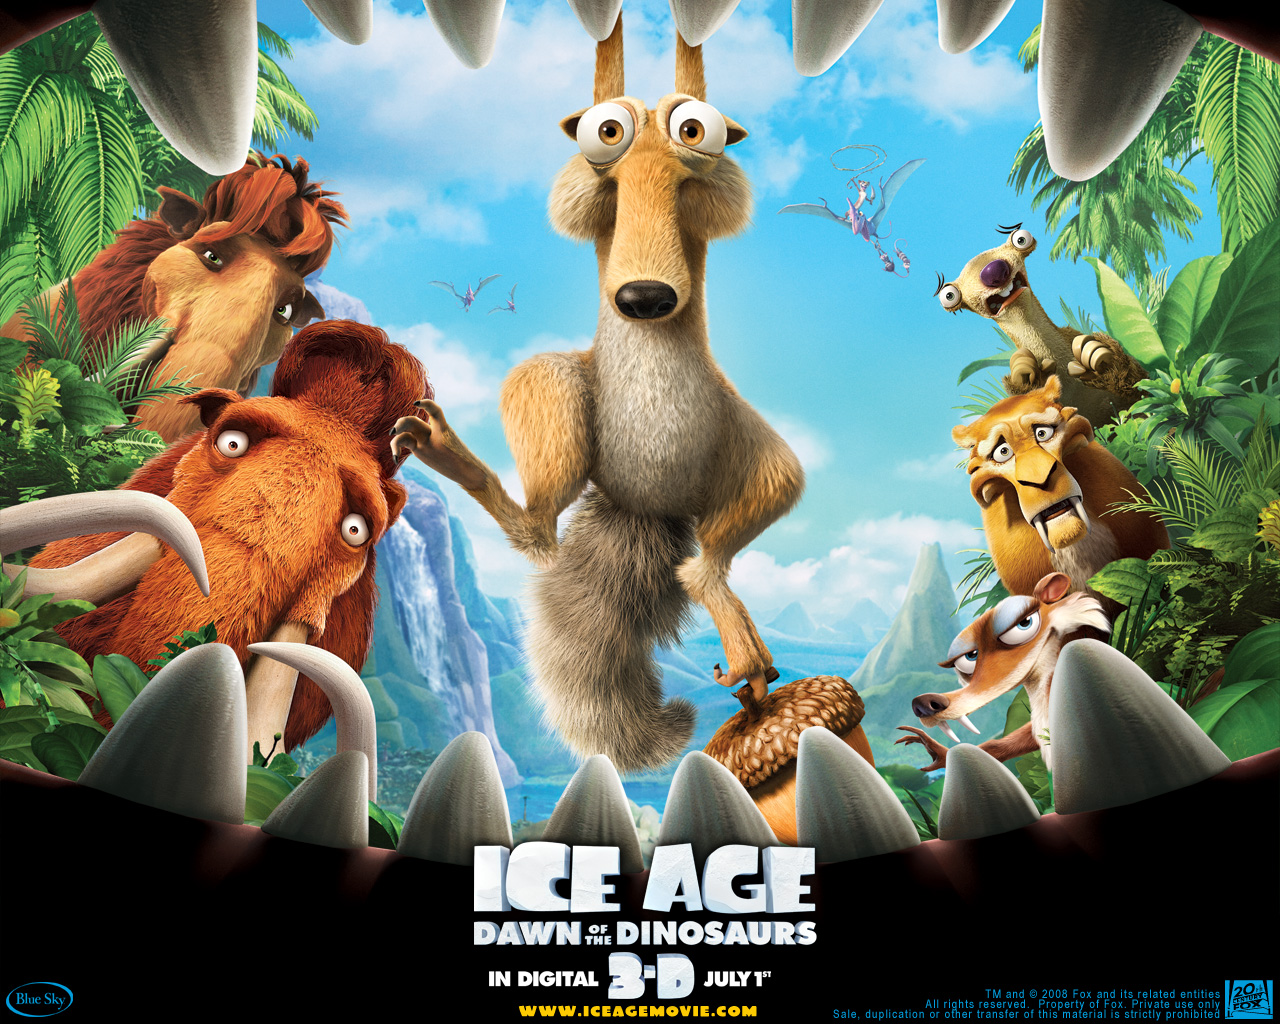 "Ice Age" cartoon movie desktop wallpaper number 2 (1280 x 1024 pixels)